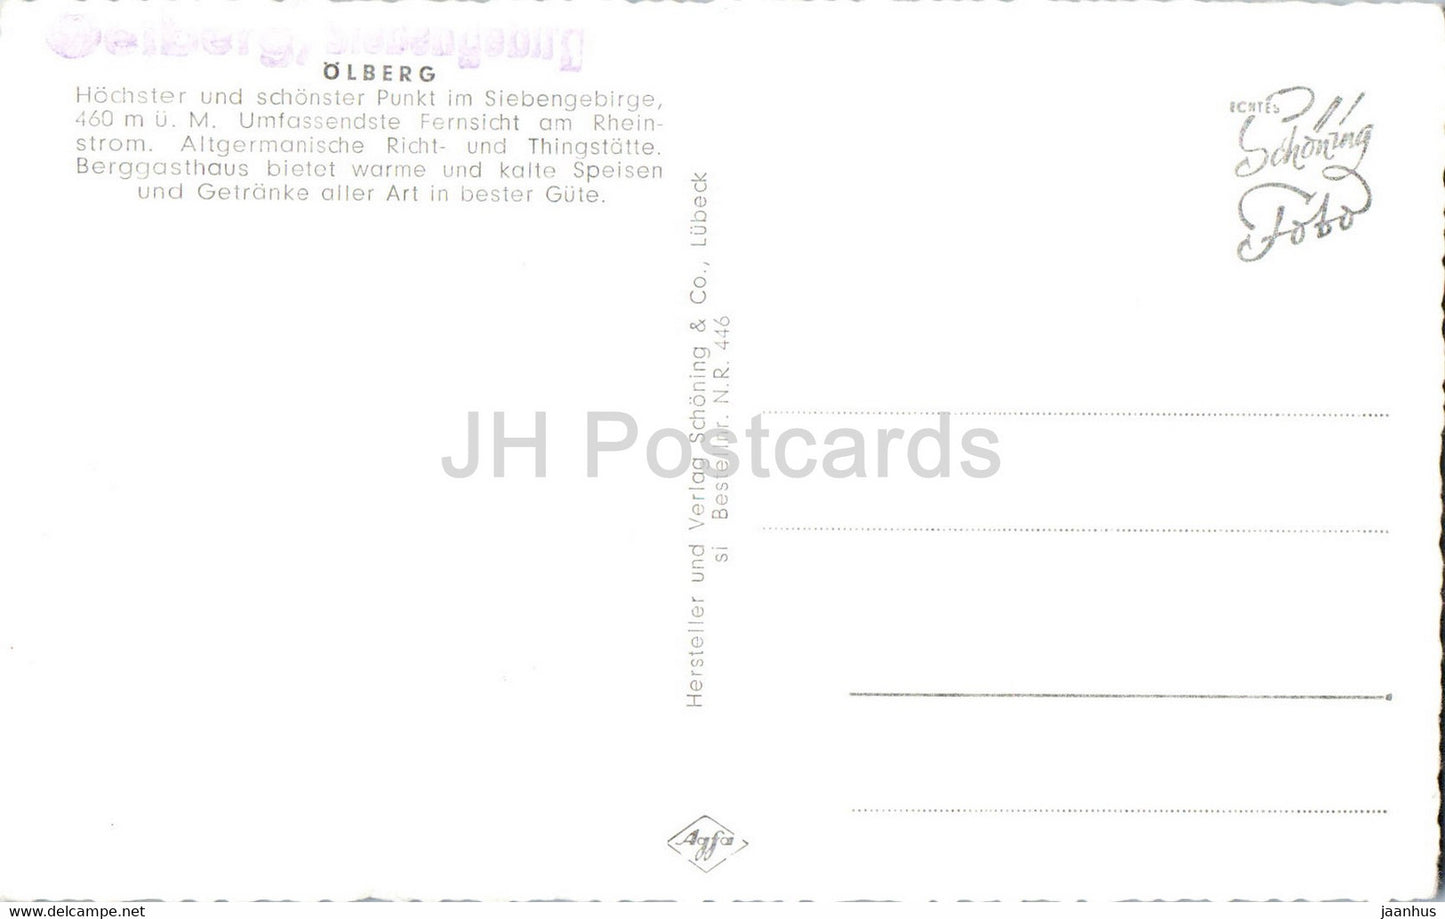 Olberg - Siebengebirge - Berggasthaus - alte Postkarte - Deutschland - unbenutzt